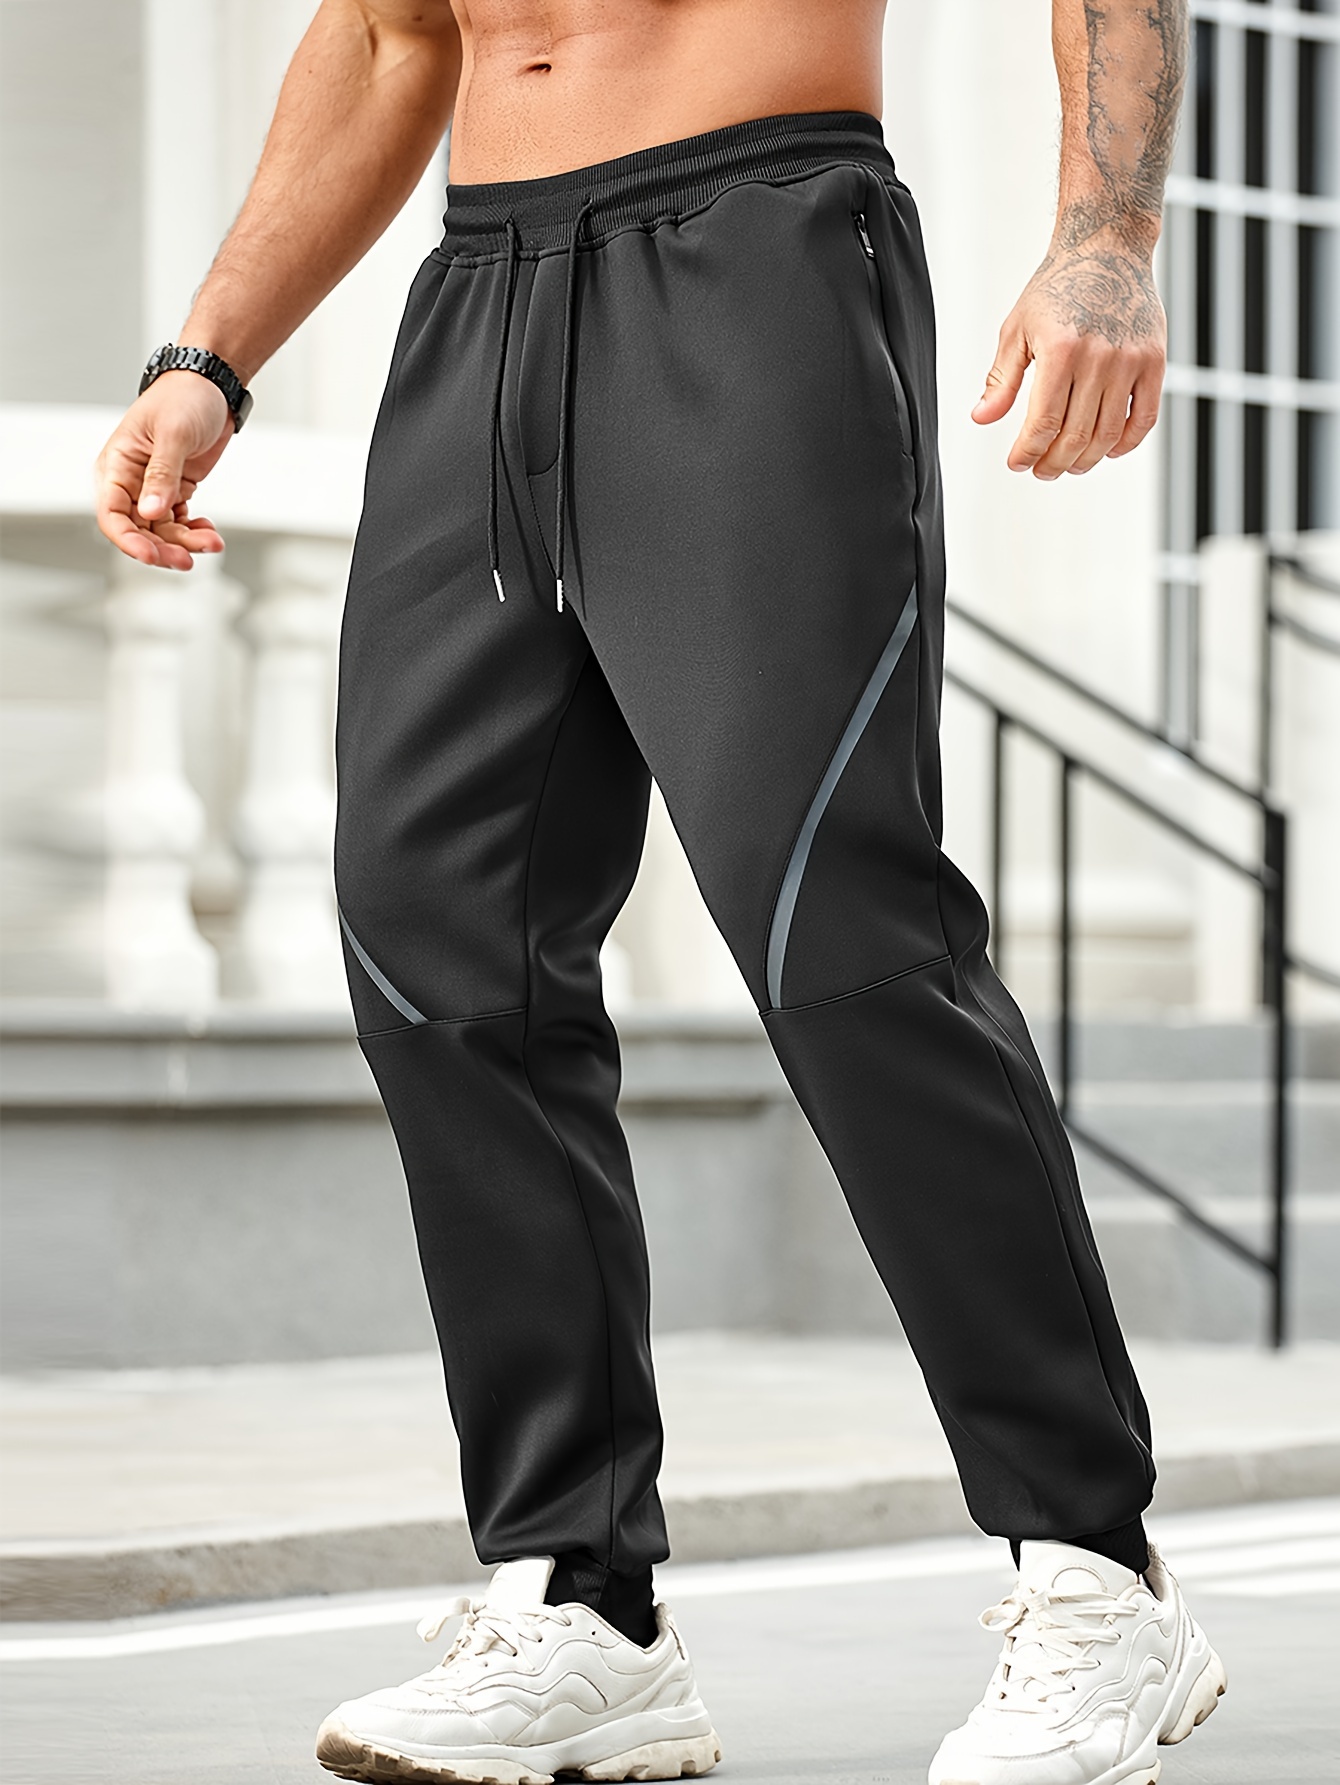 Drawstring Sweatpants Loose Fit Pants Men's Casual Joggers For Men Spr –  Daniel T Miller